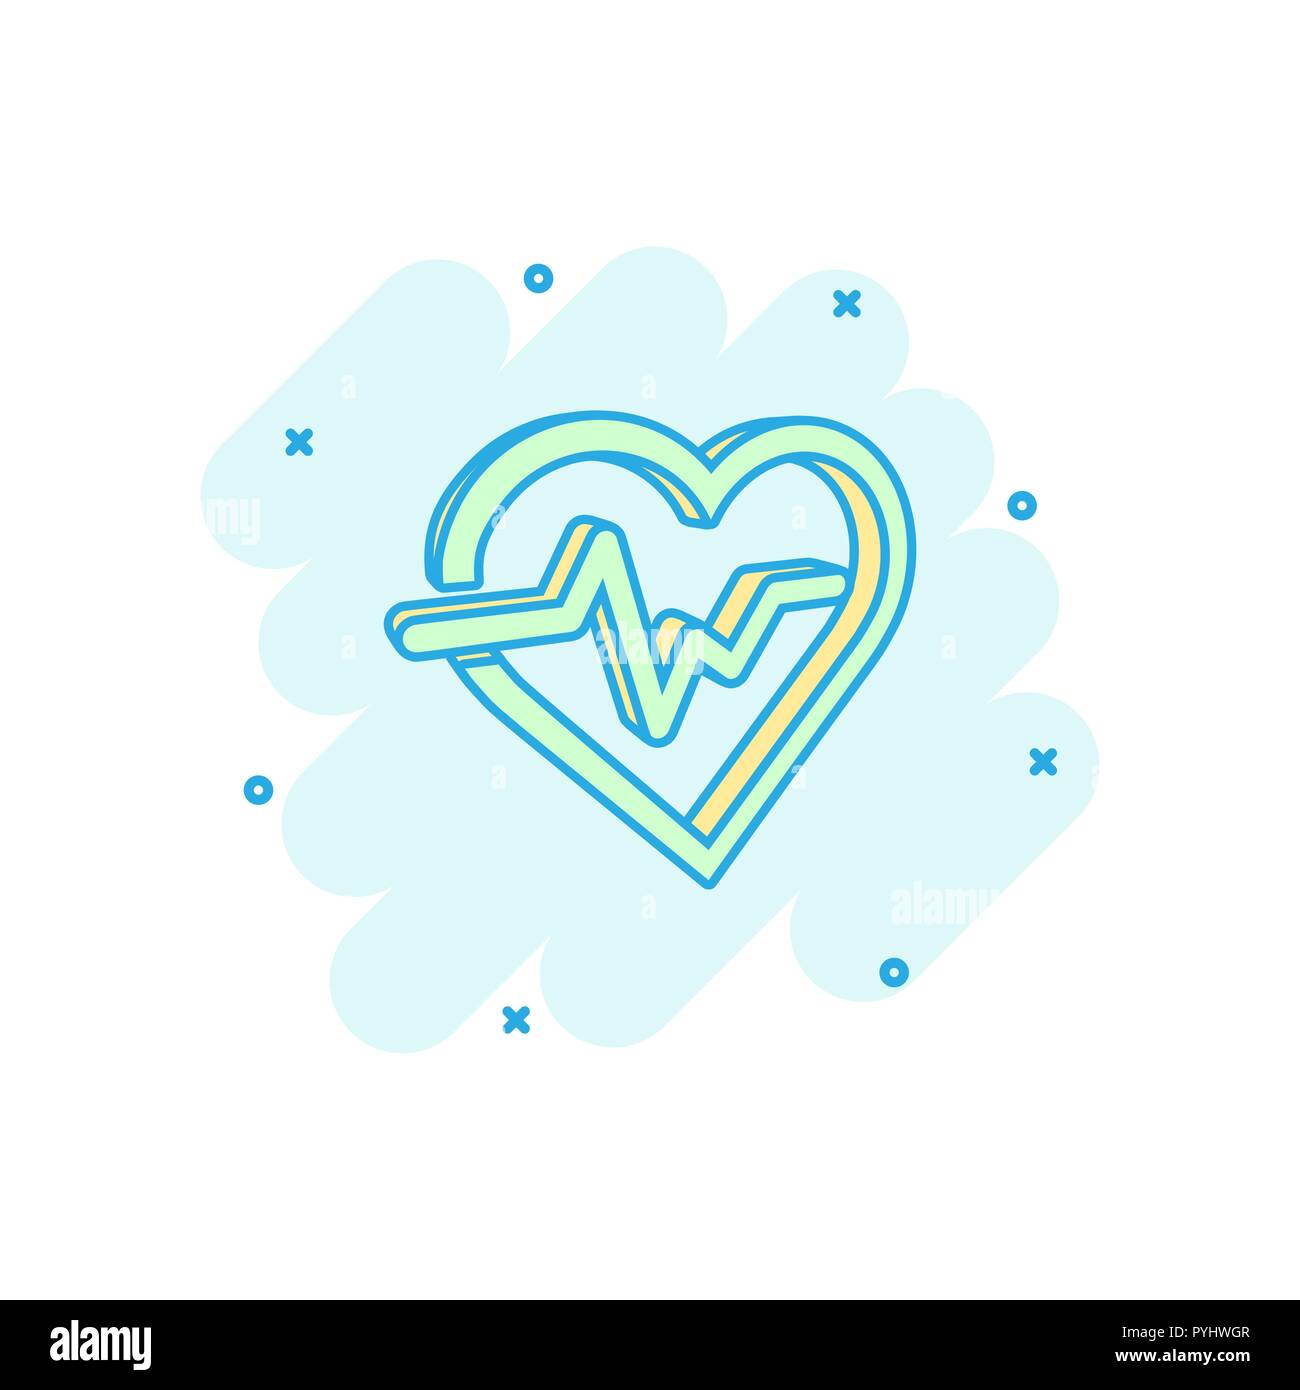 Vector cartoon linea heartbeat con icona a forma di cuore in stile fumetto. Concetto di heartbeat illustrazione pittogramma. Ritmo cardiaco business effetto splash concept. Illustrazione Vettoriale